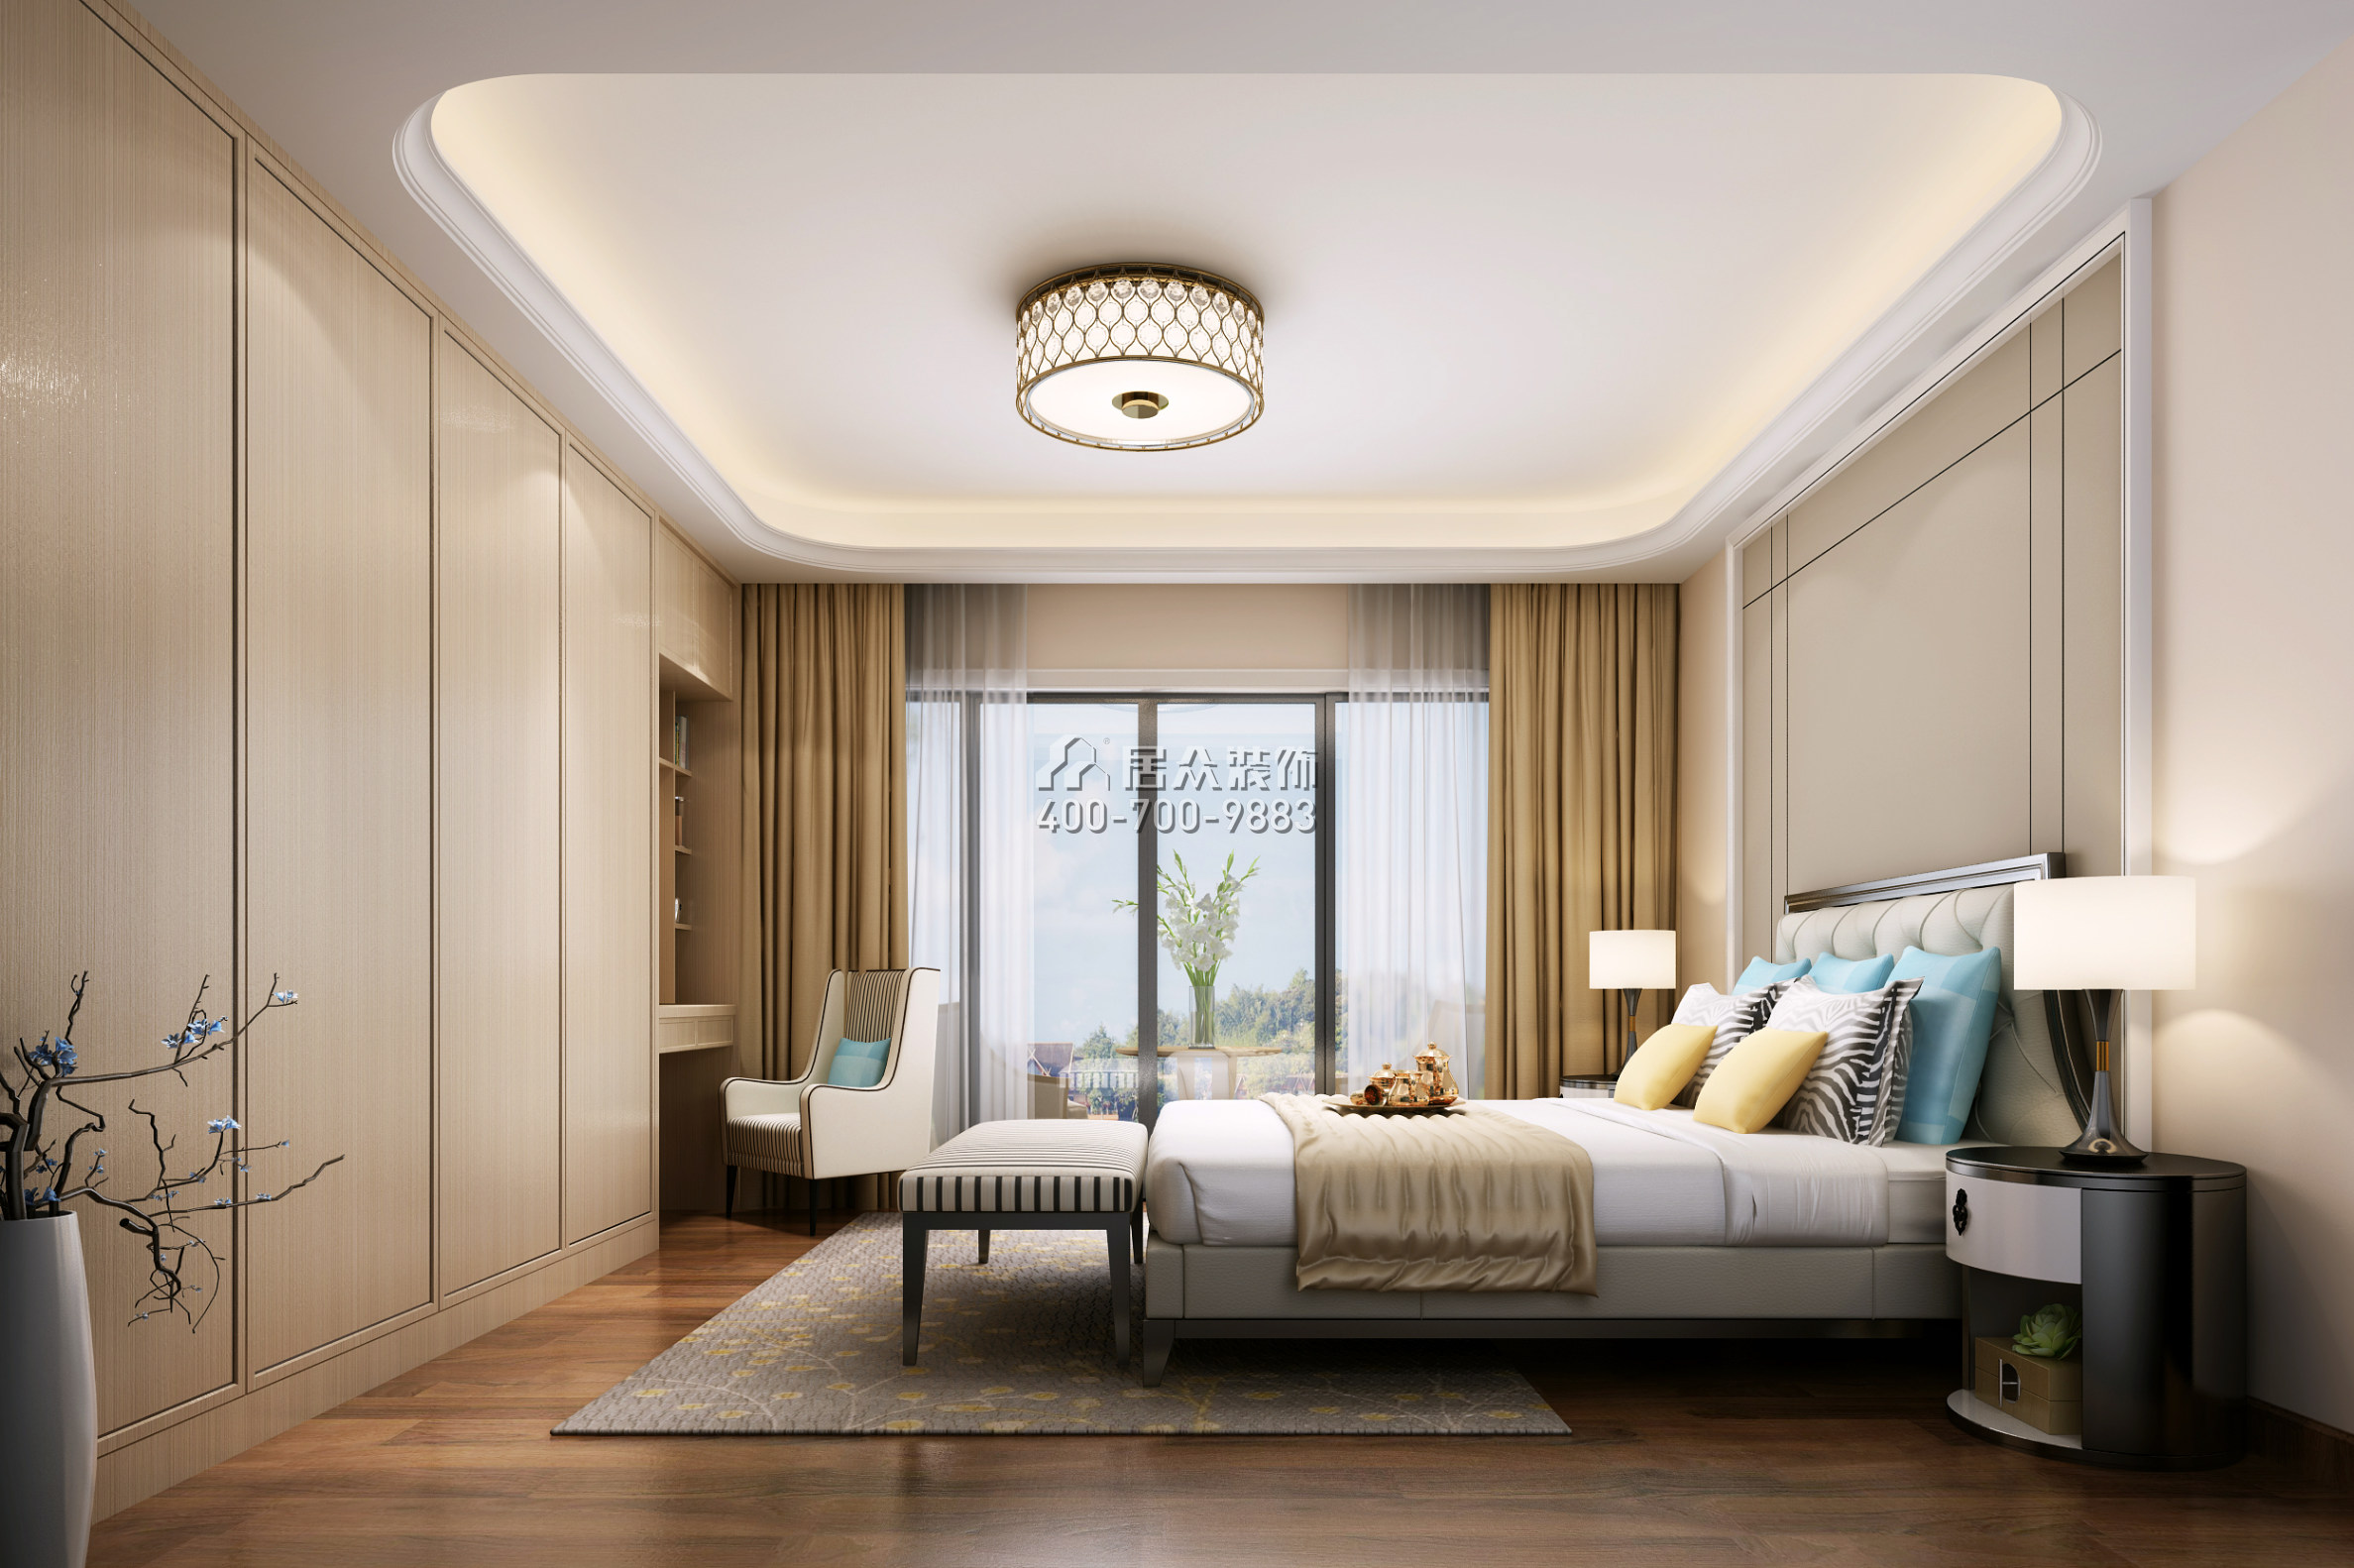 海逸豪庭尚都126平方米现代简约风格复式户型卧室装修效果图